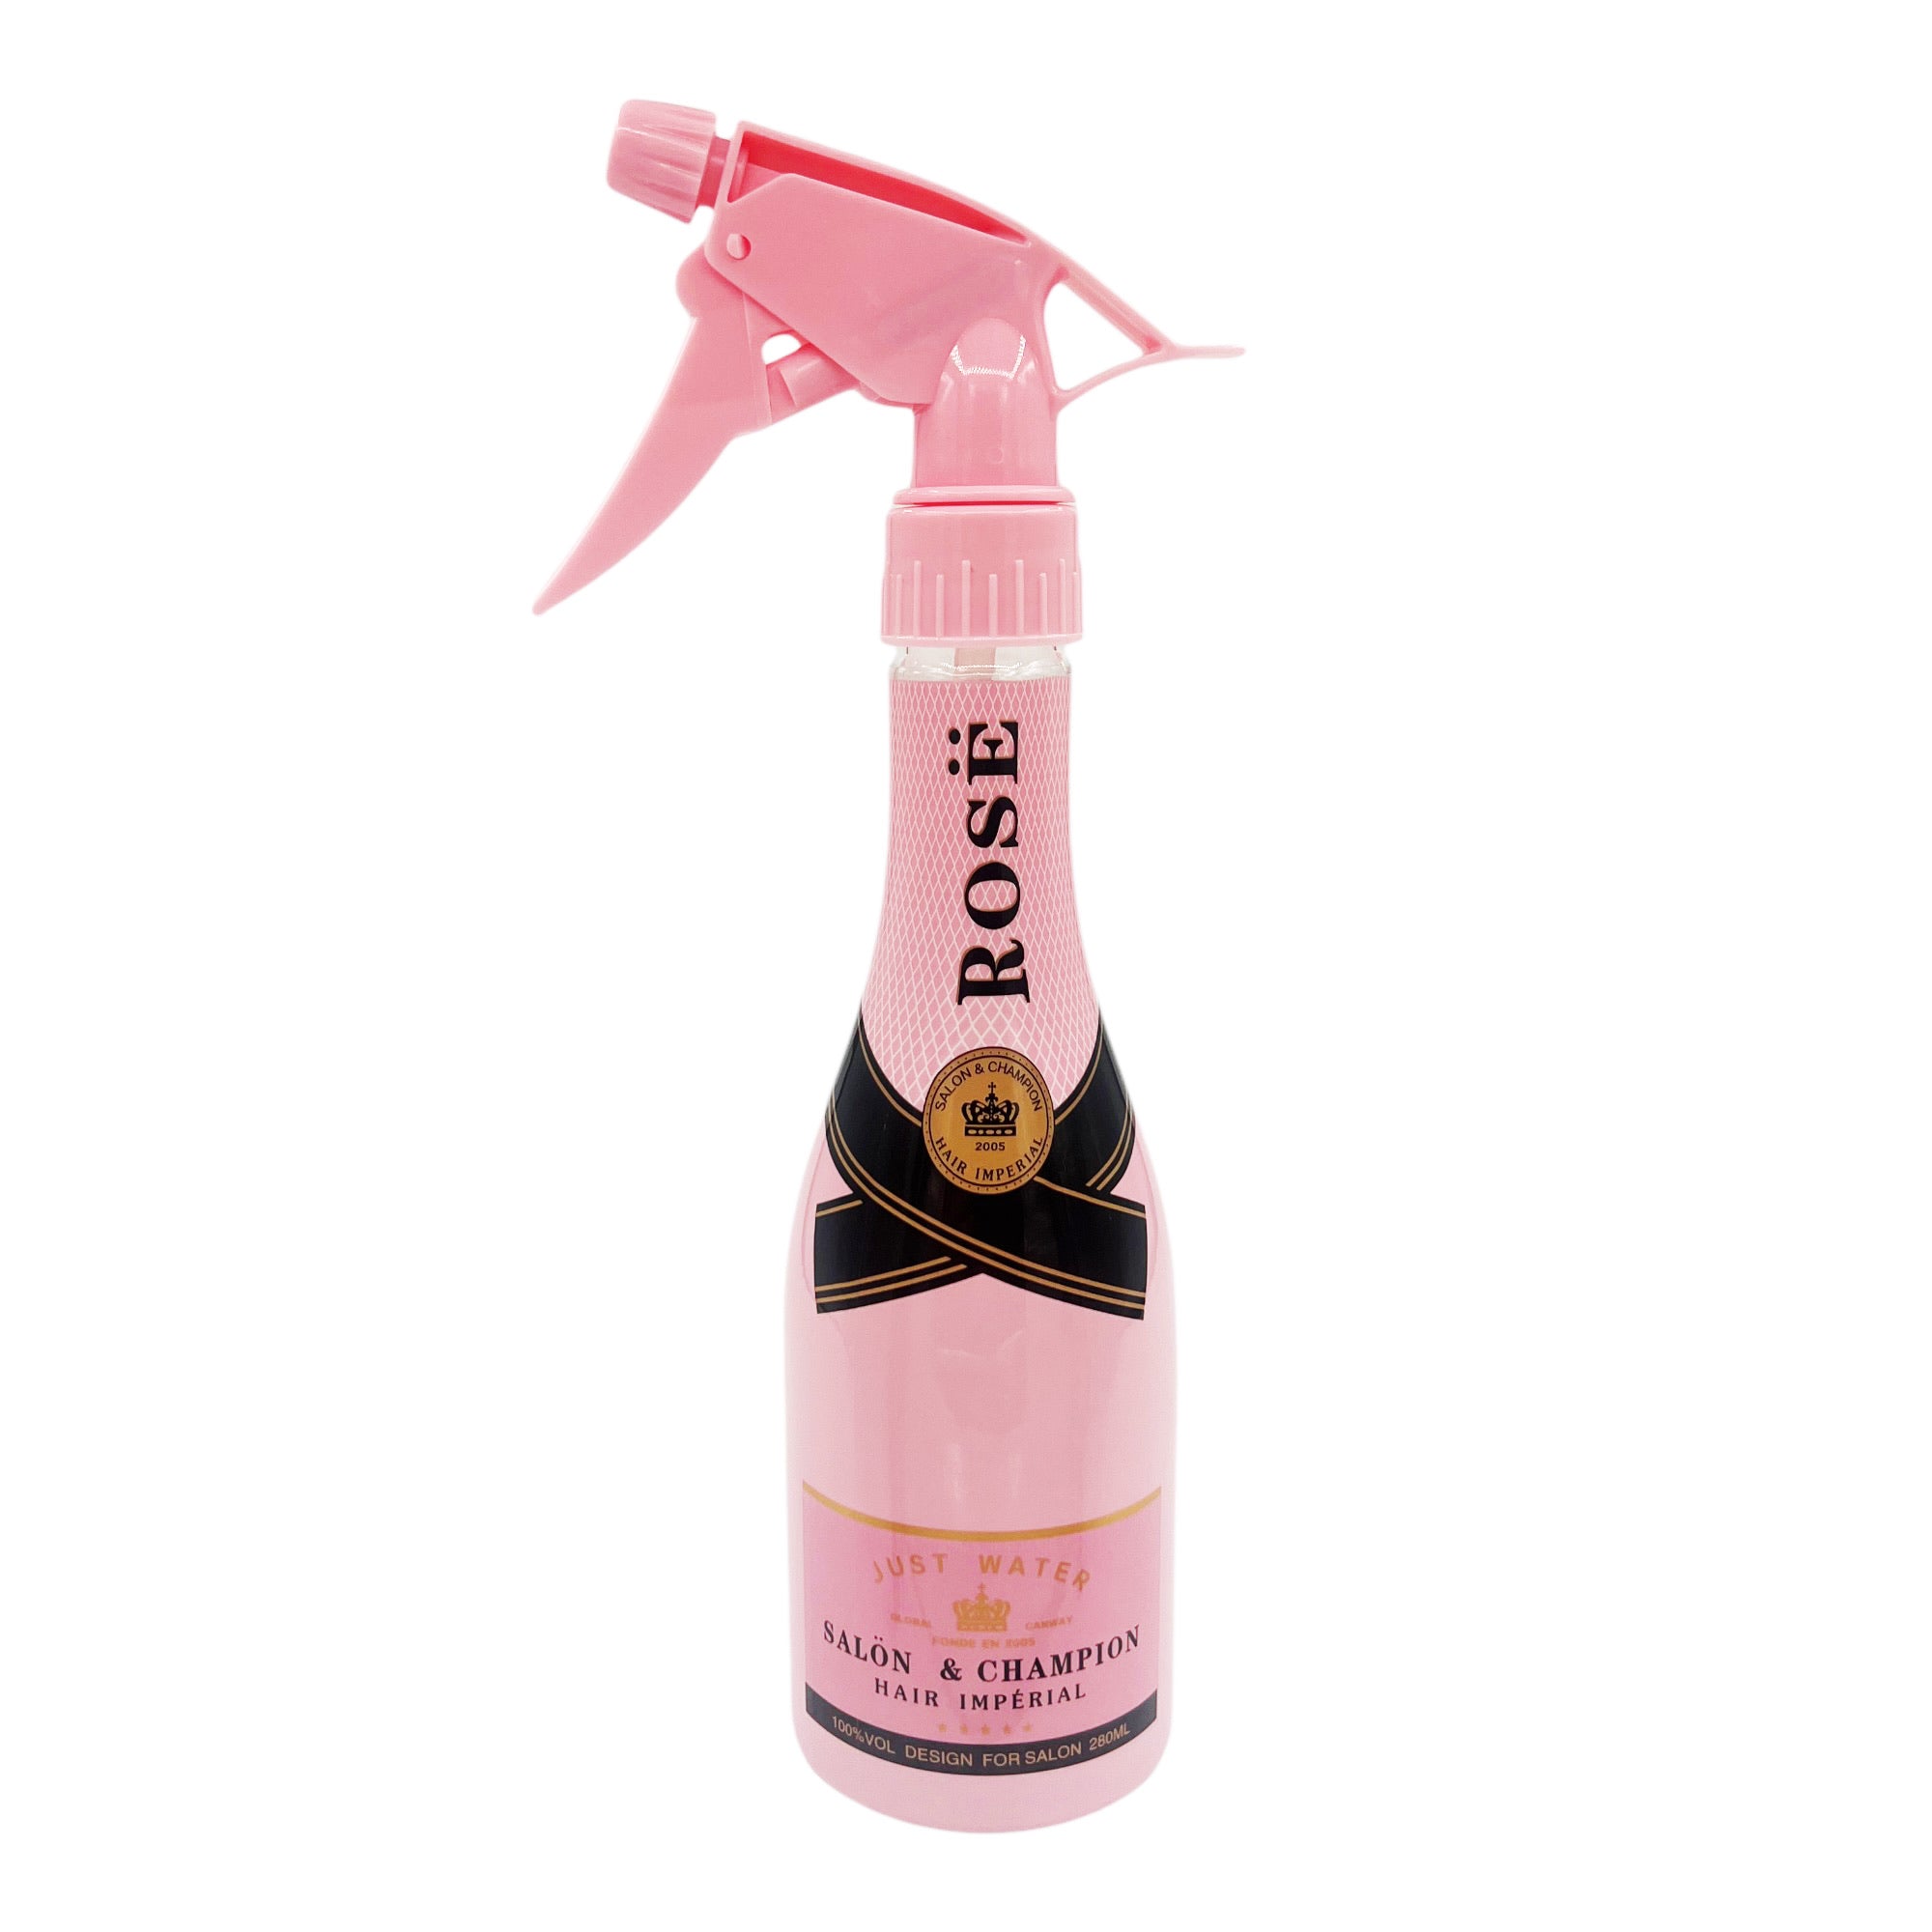 Eson - Water Spray Bottle 280ml Extreme Mist Sprayer Champagne Style (Pink)